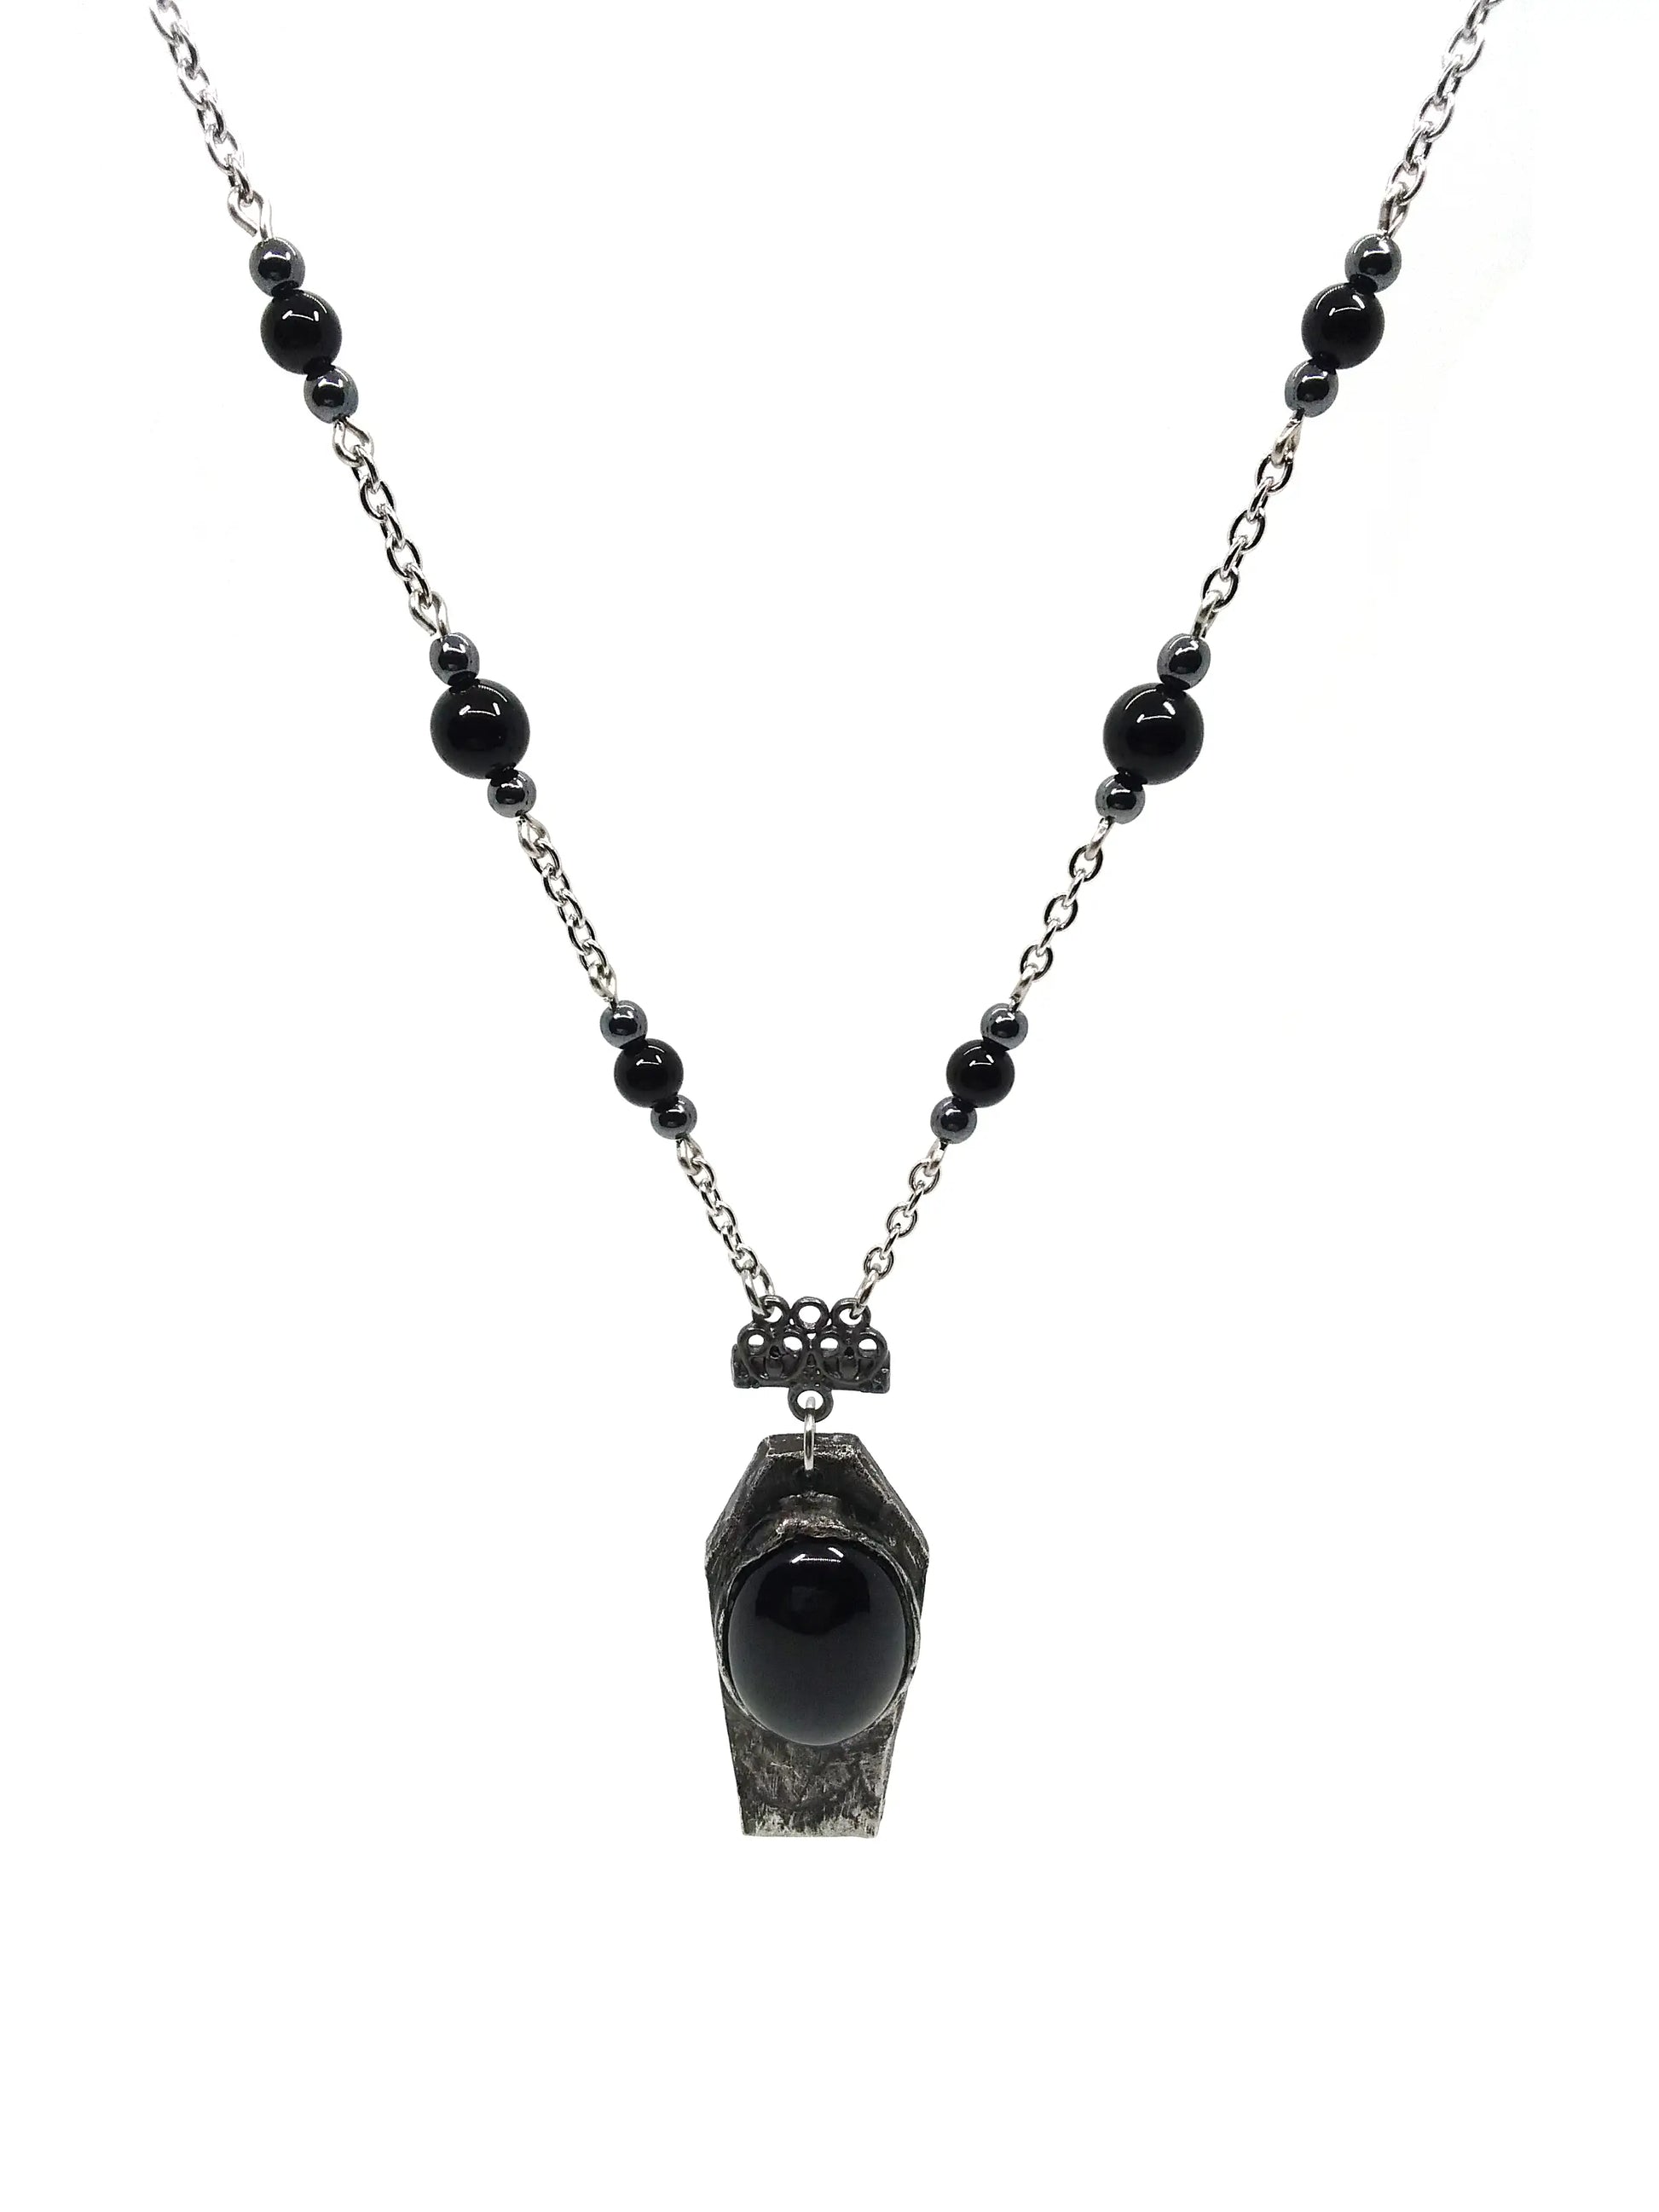 Onyx Coffin Necklace - Spellbound